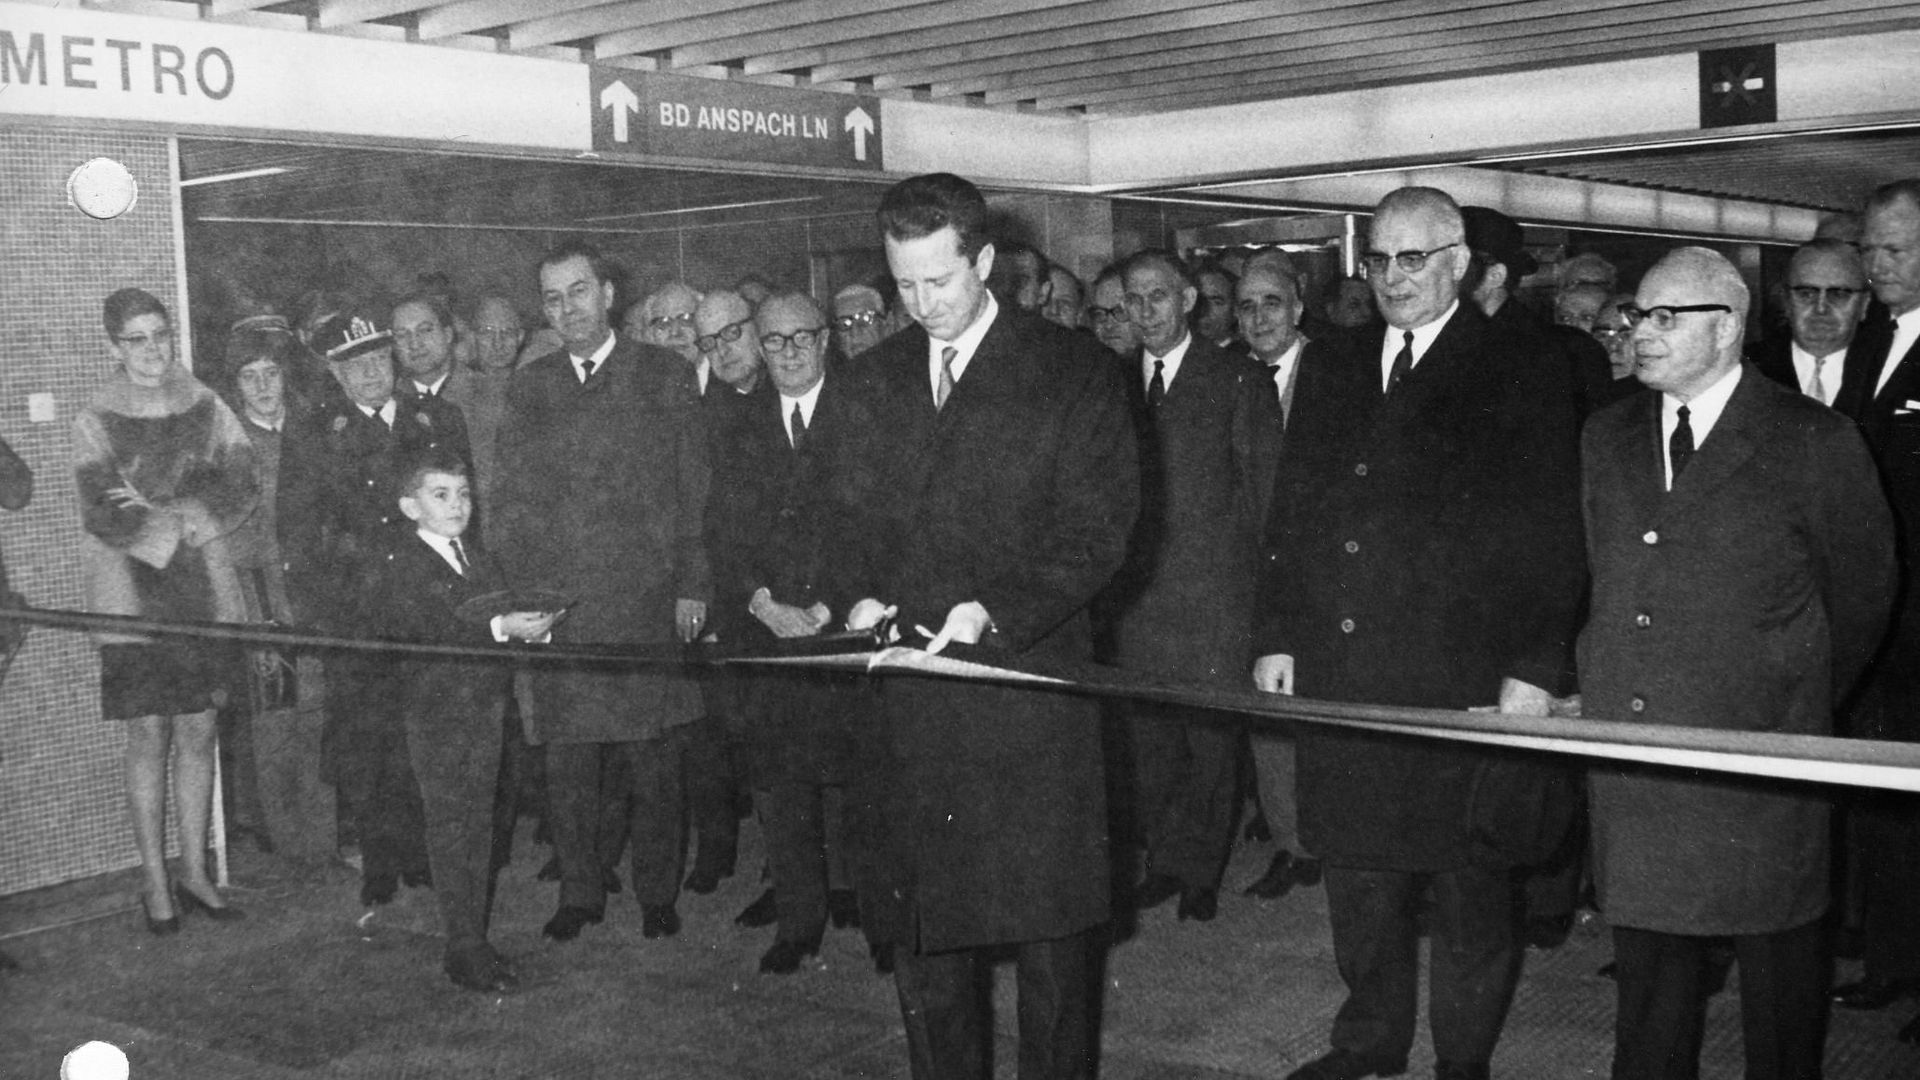 Le 20 septembre 1976, inauguration du métro par le Roi Baudouin 